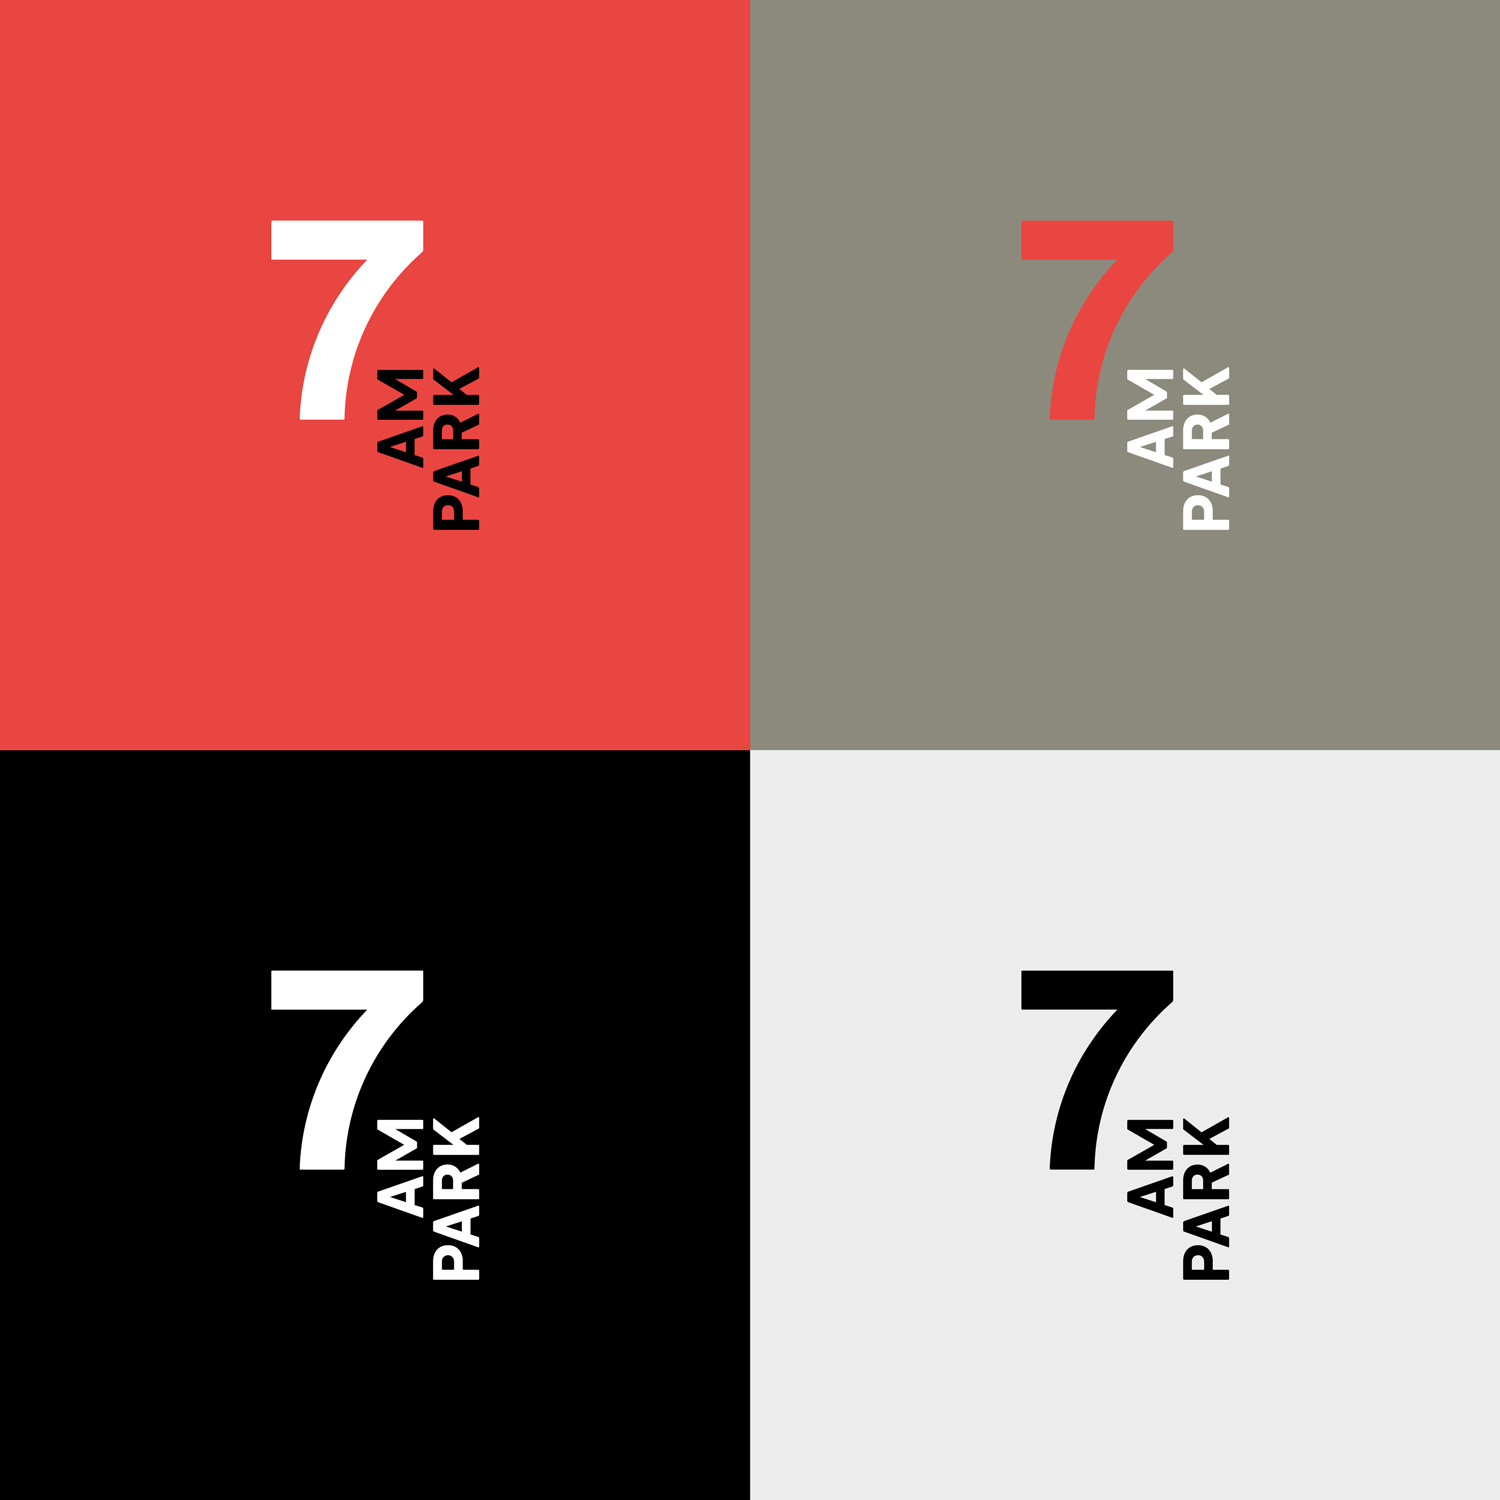 Corporate Design, Logo für unterschiedlichen Einsatz: sw, negativ, positiv und auf farbigem Hintergrund